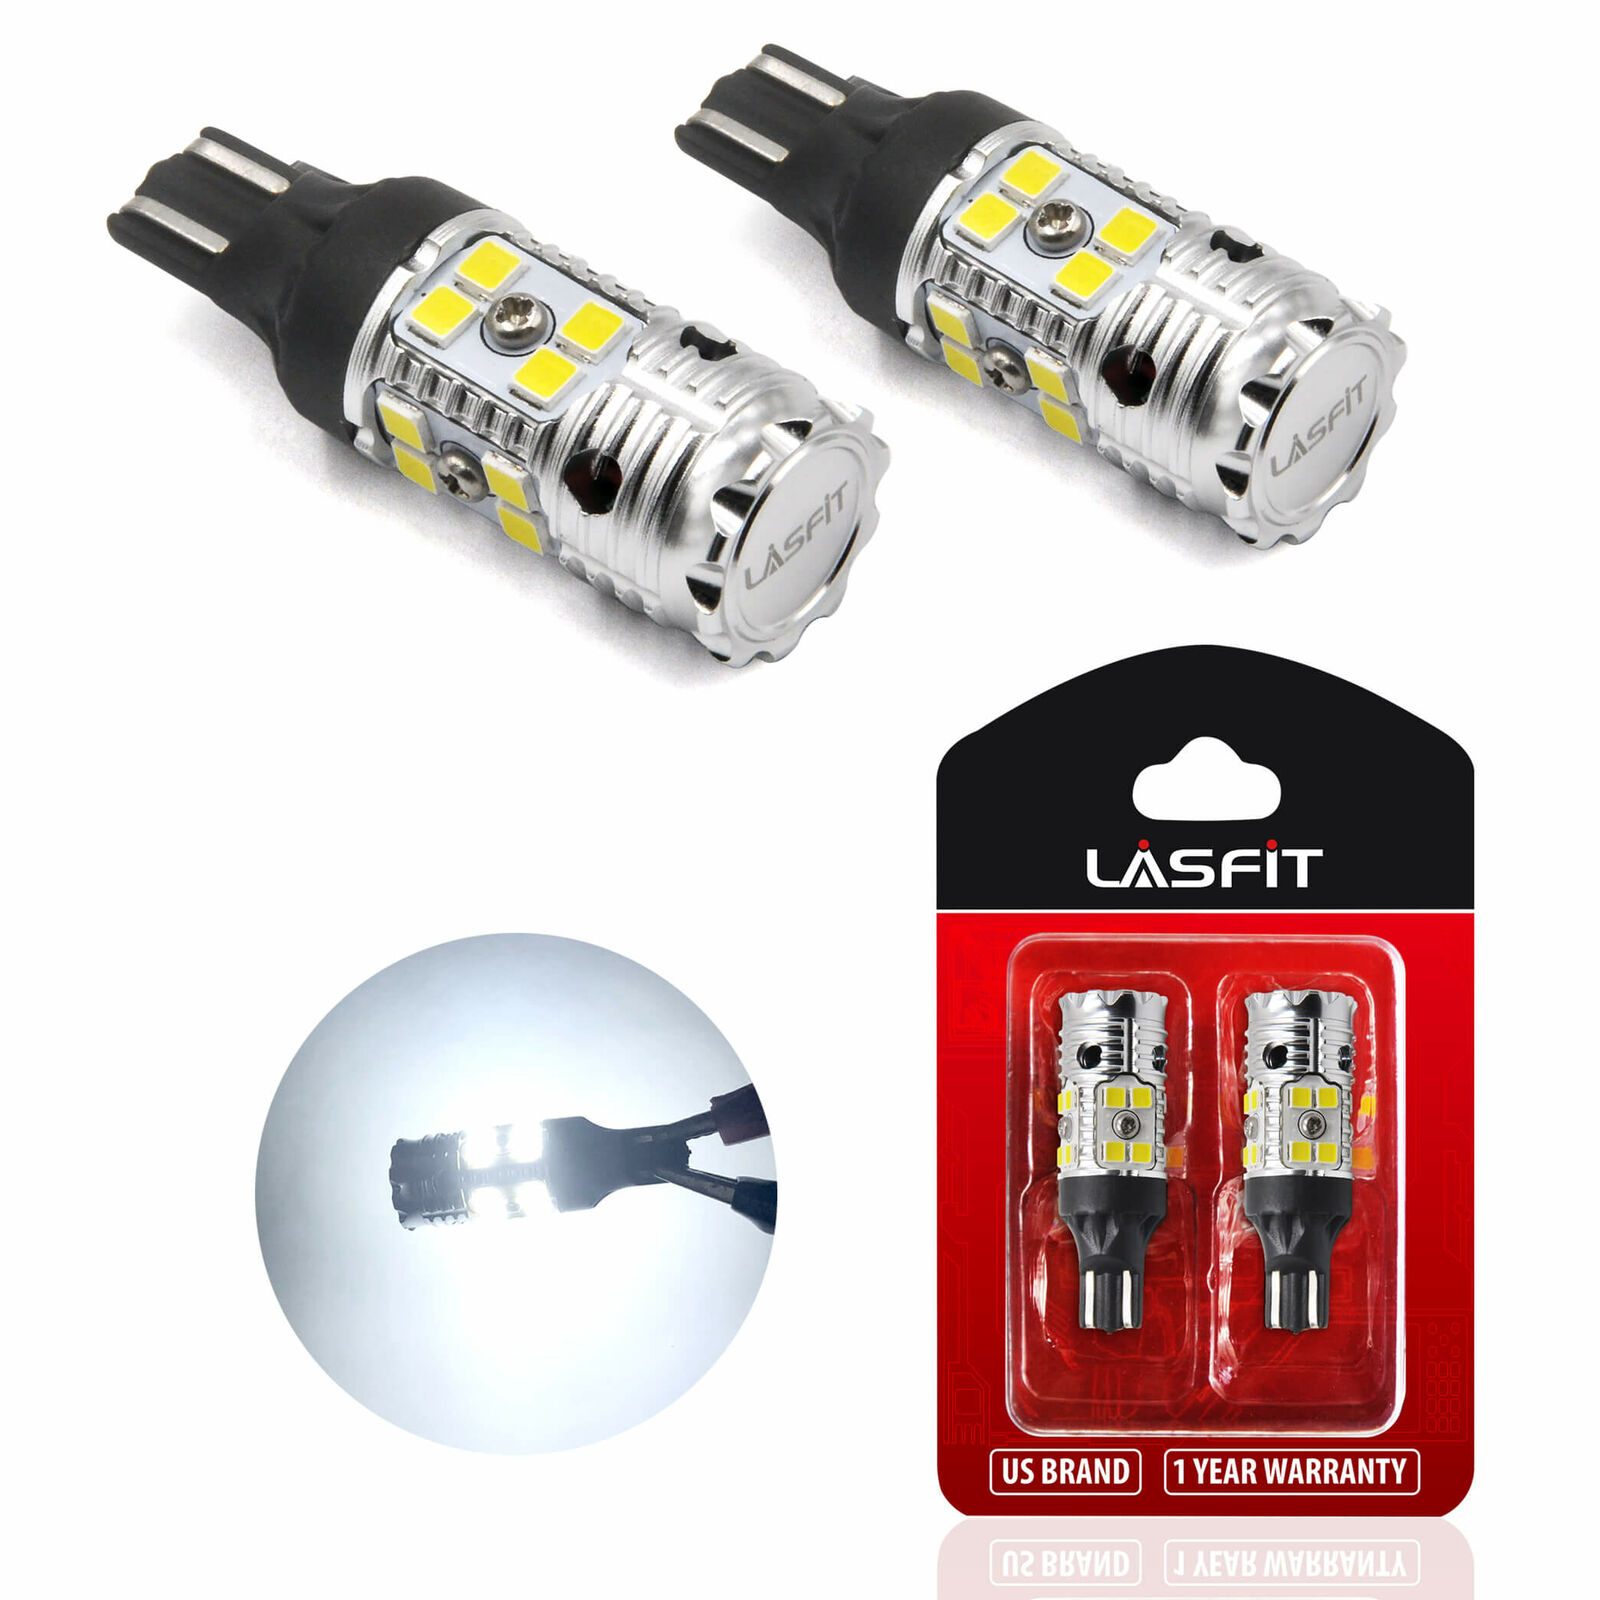 LASFIT LED Backup Reverse Light Bulbs 921 912 T15 Super Bright Canbus Error Free